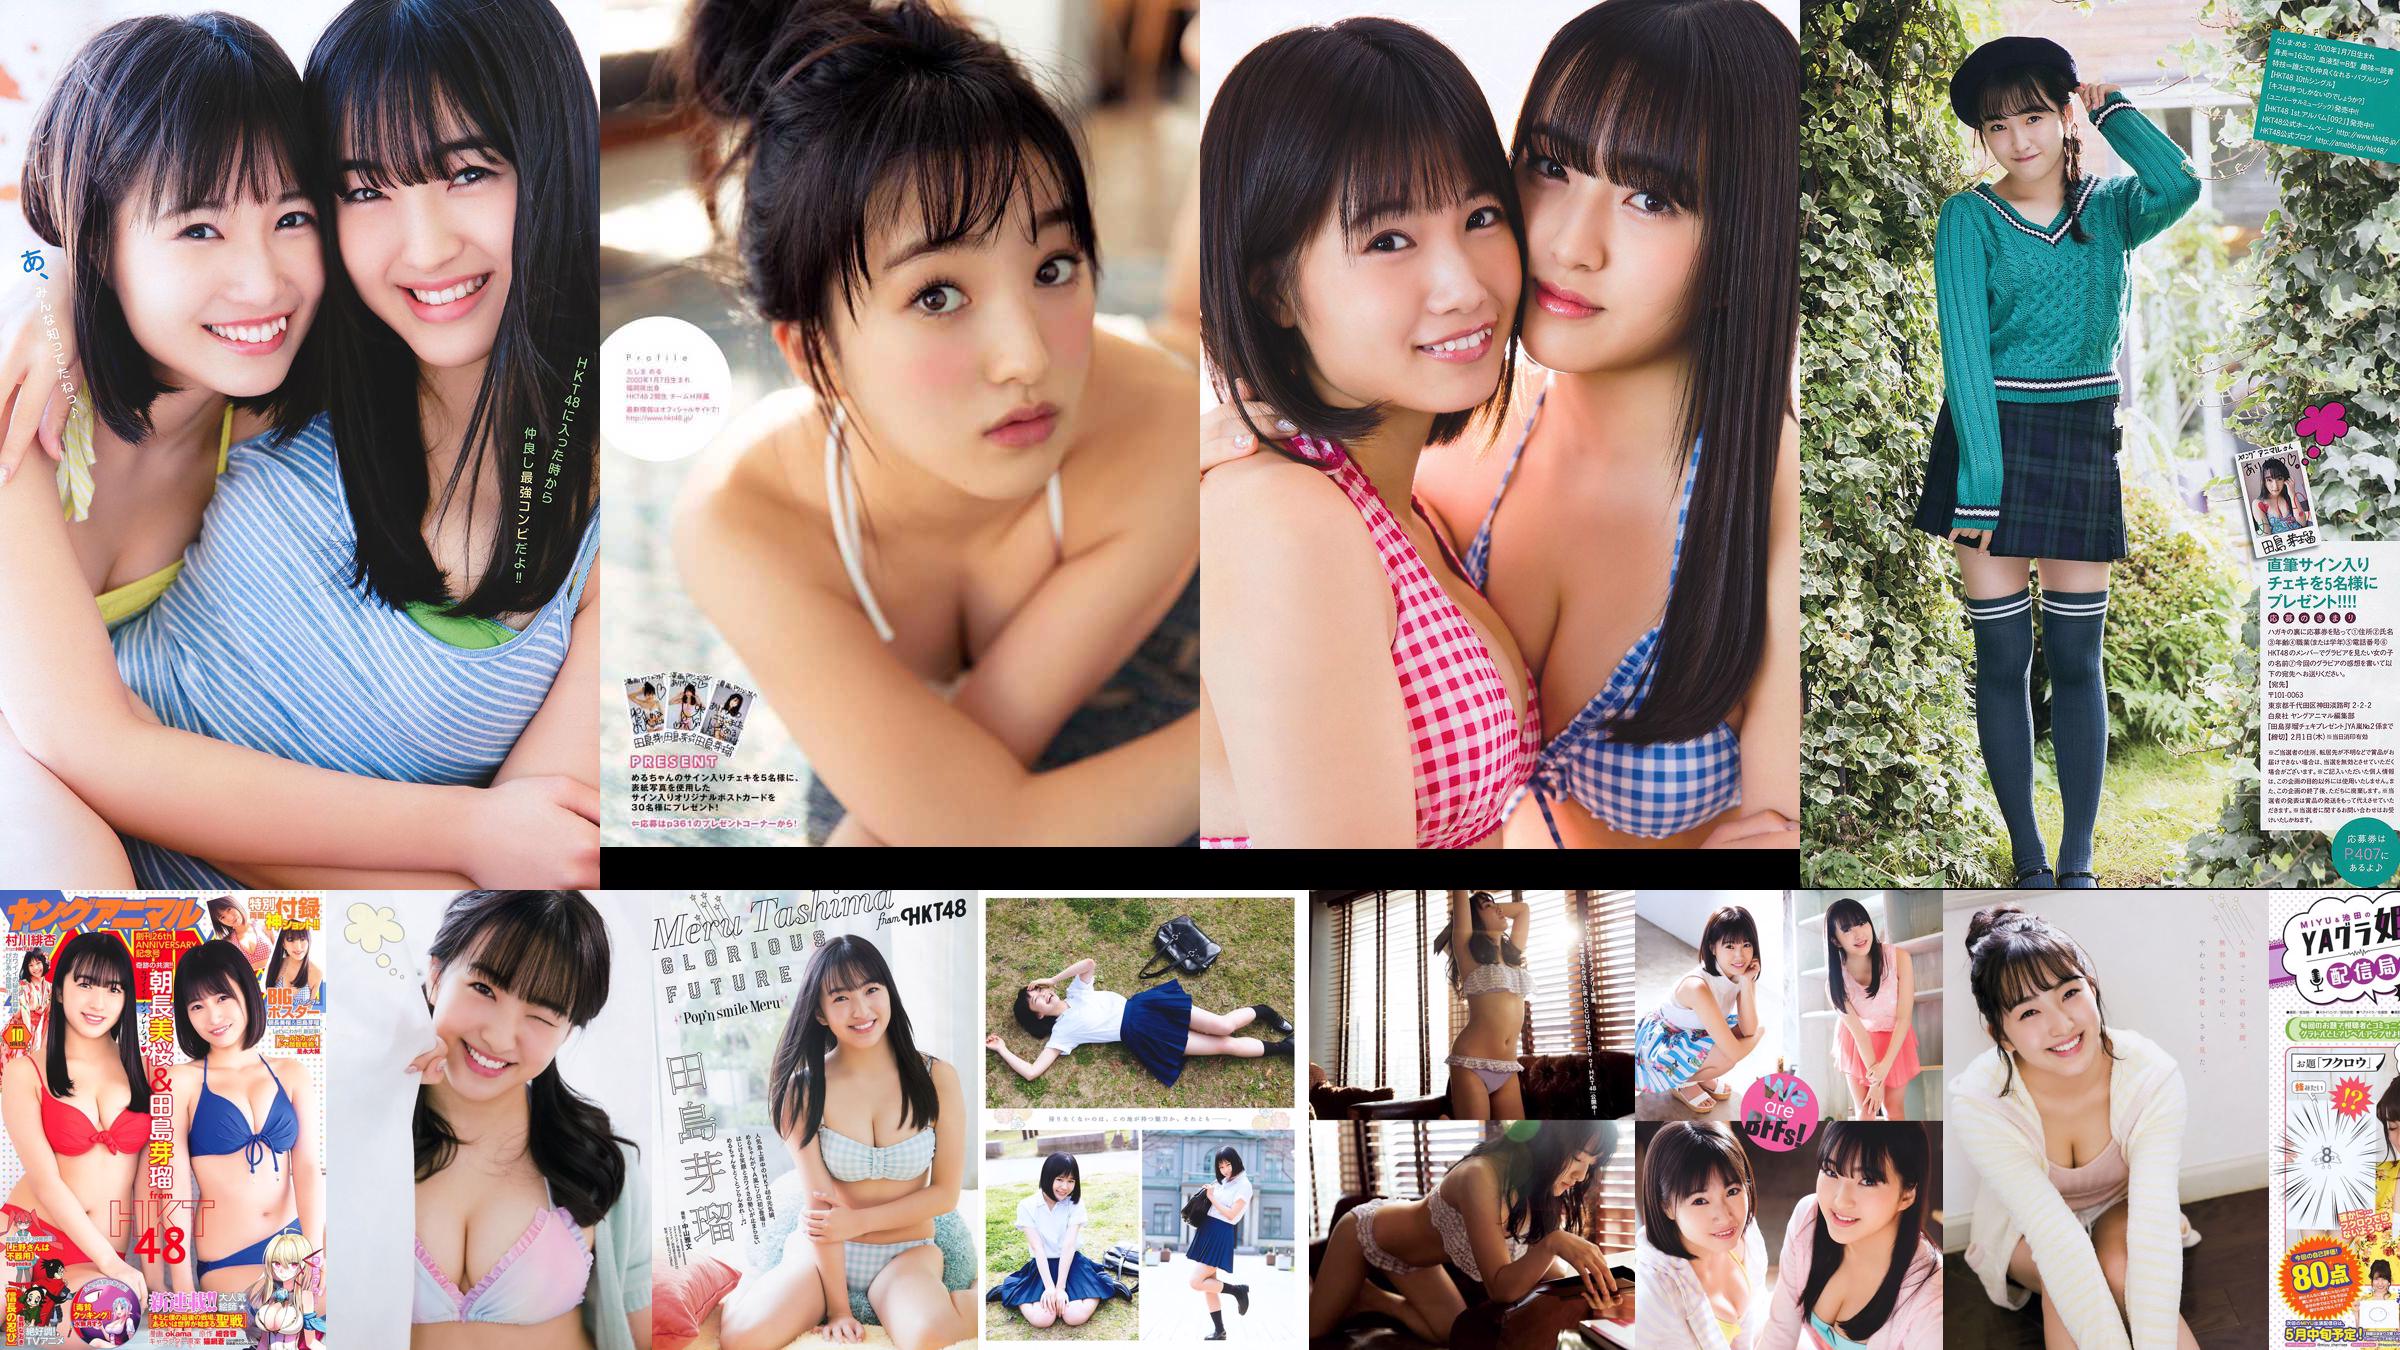 Nana Ayano Yuka Someya [Young Animal Arashi Special Edition] No.06 2015 Foto No.495d89 Pagina 5